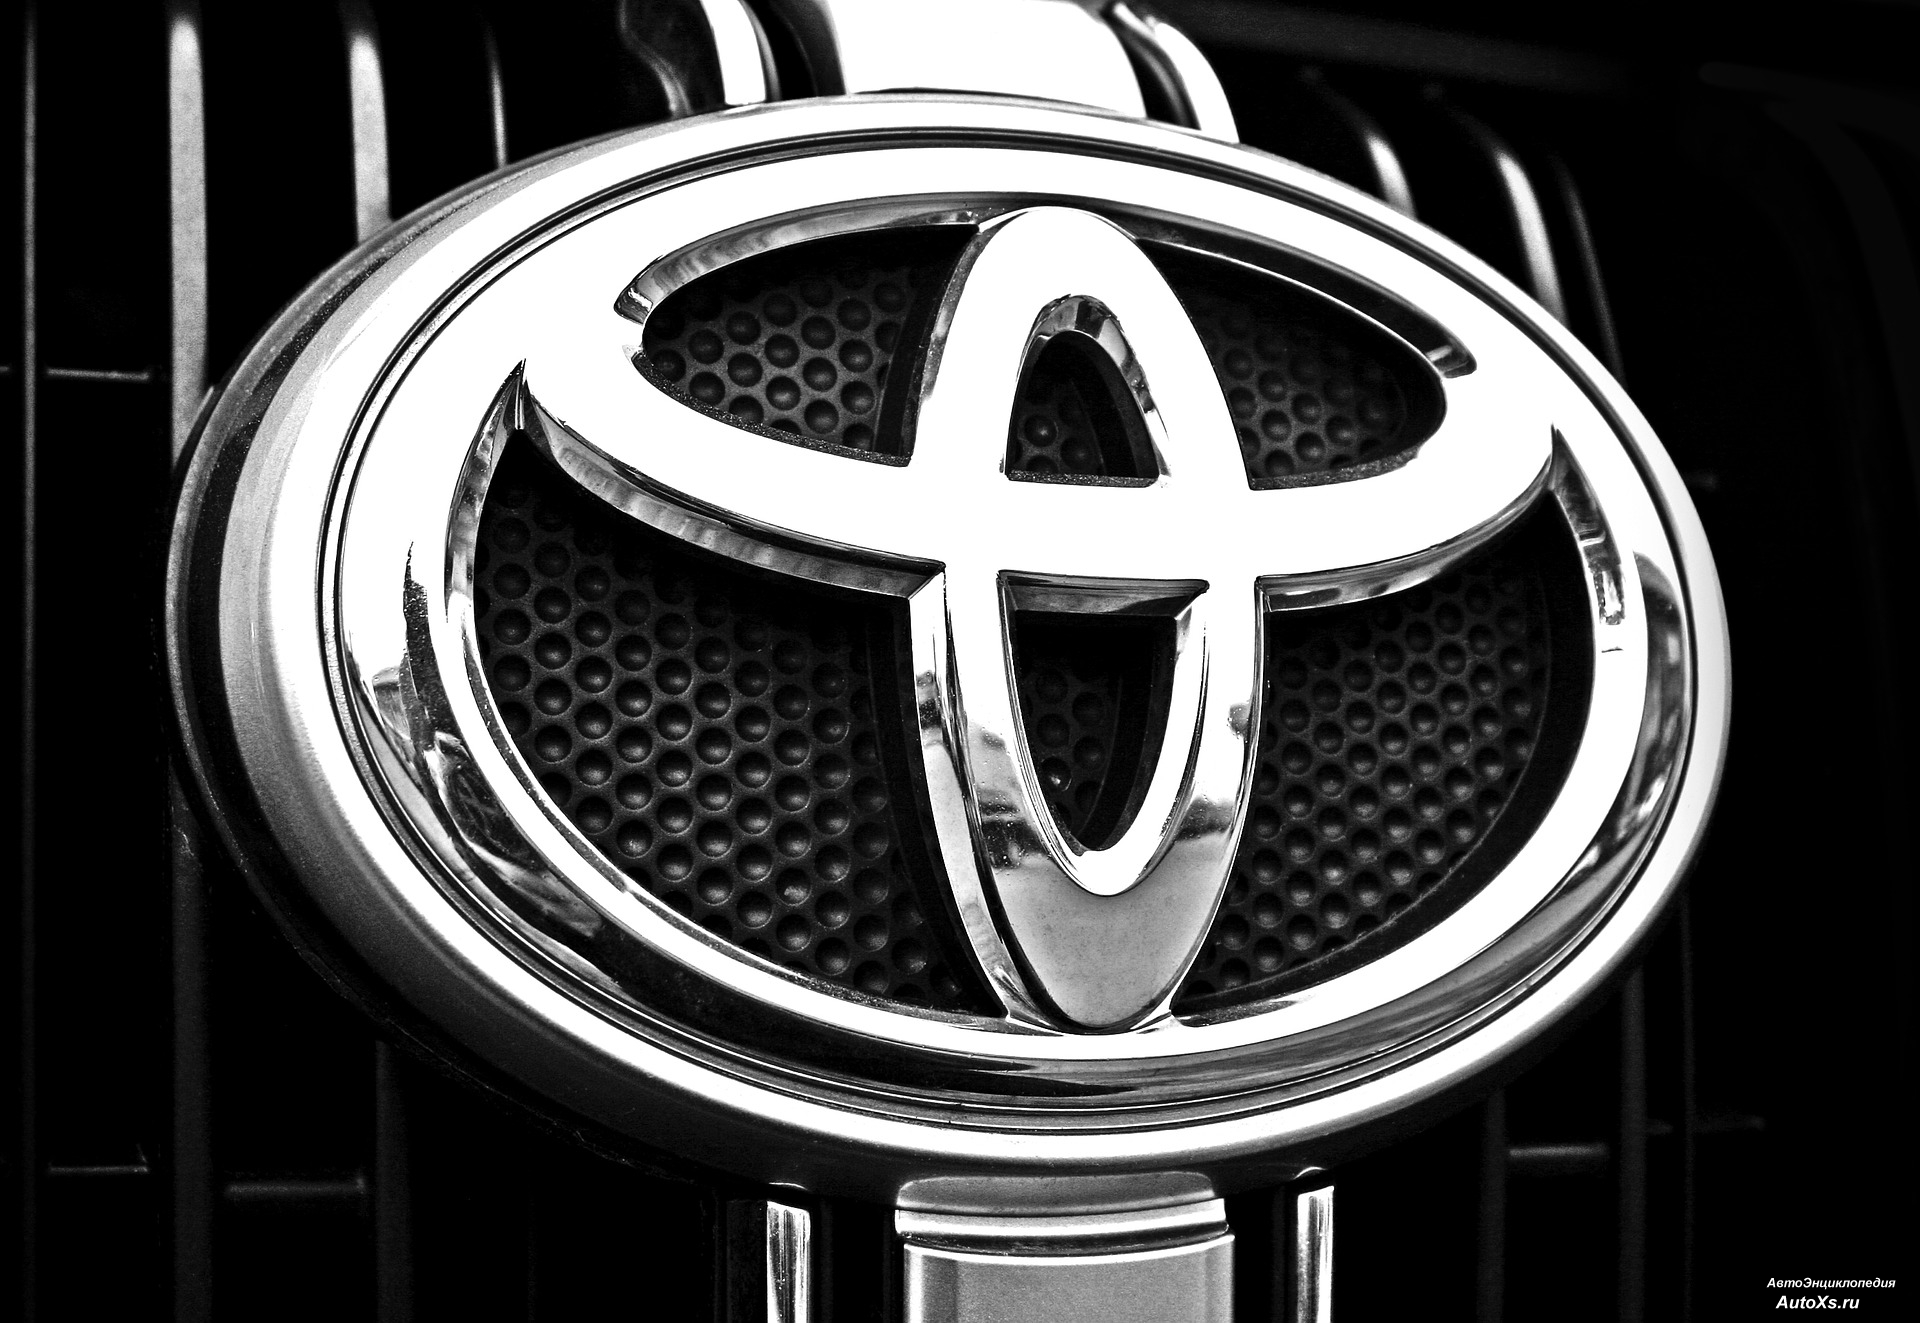 Toyota будет использовать бракованные детали при производстве новых авто